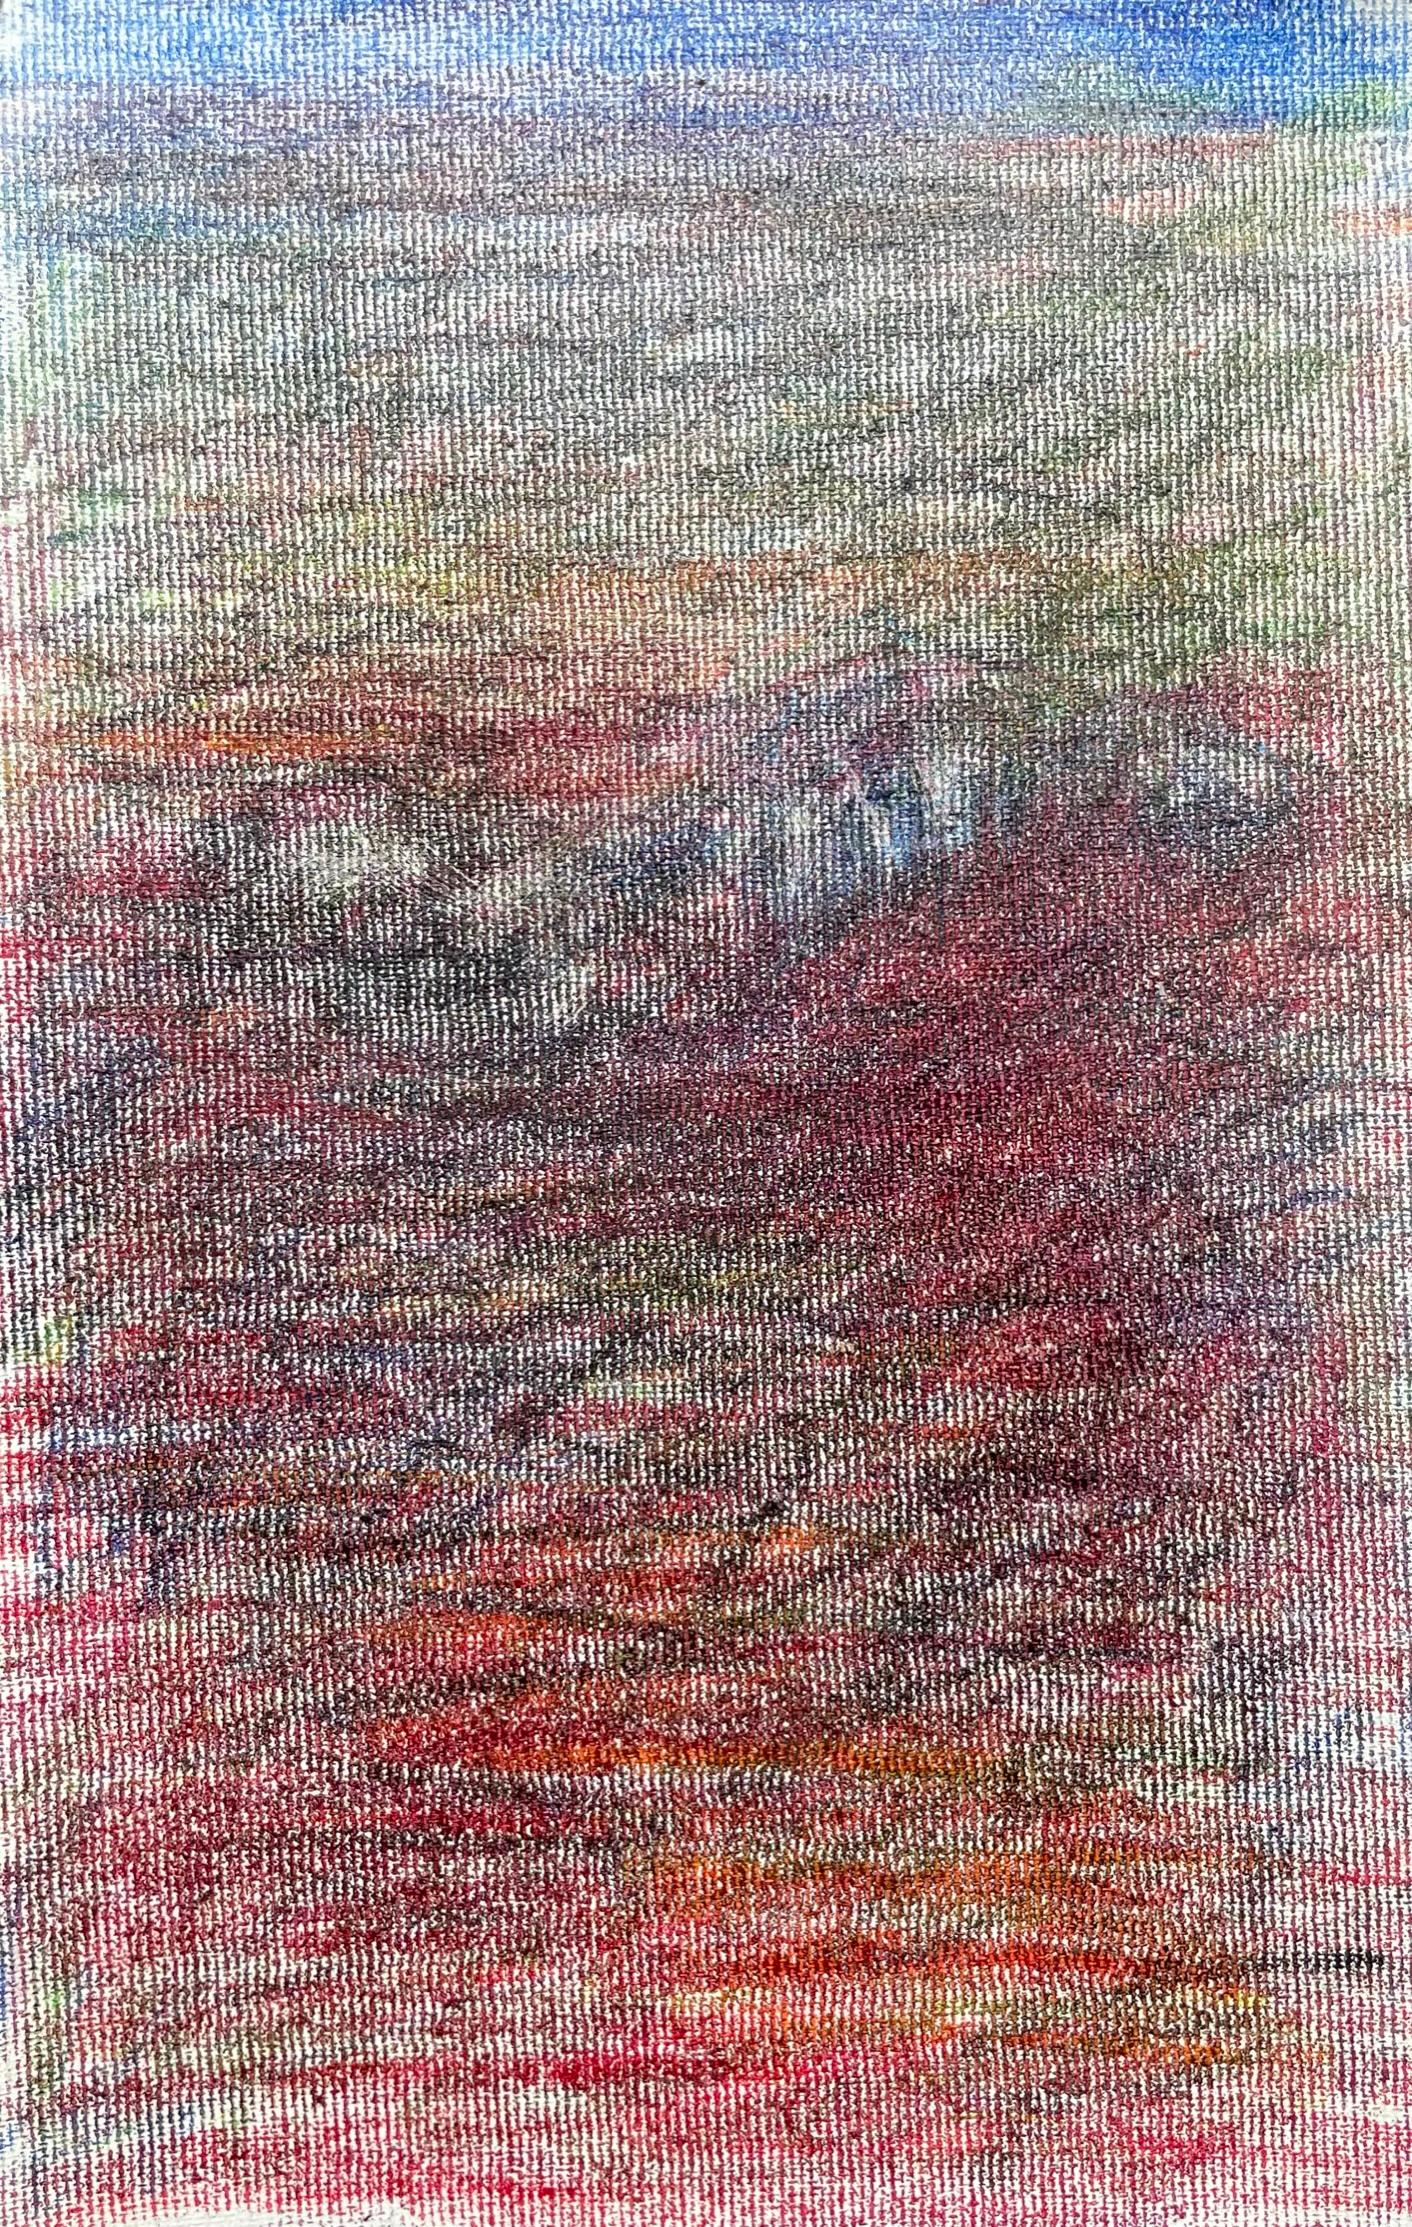 Zsolt Berszán Landscape Art – Body in the Field #2 - Rot, Blau, Zeichnung, Buntstifte, Landschaft